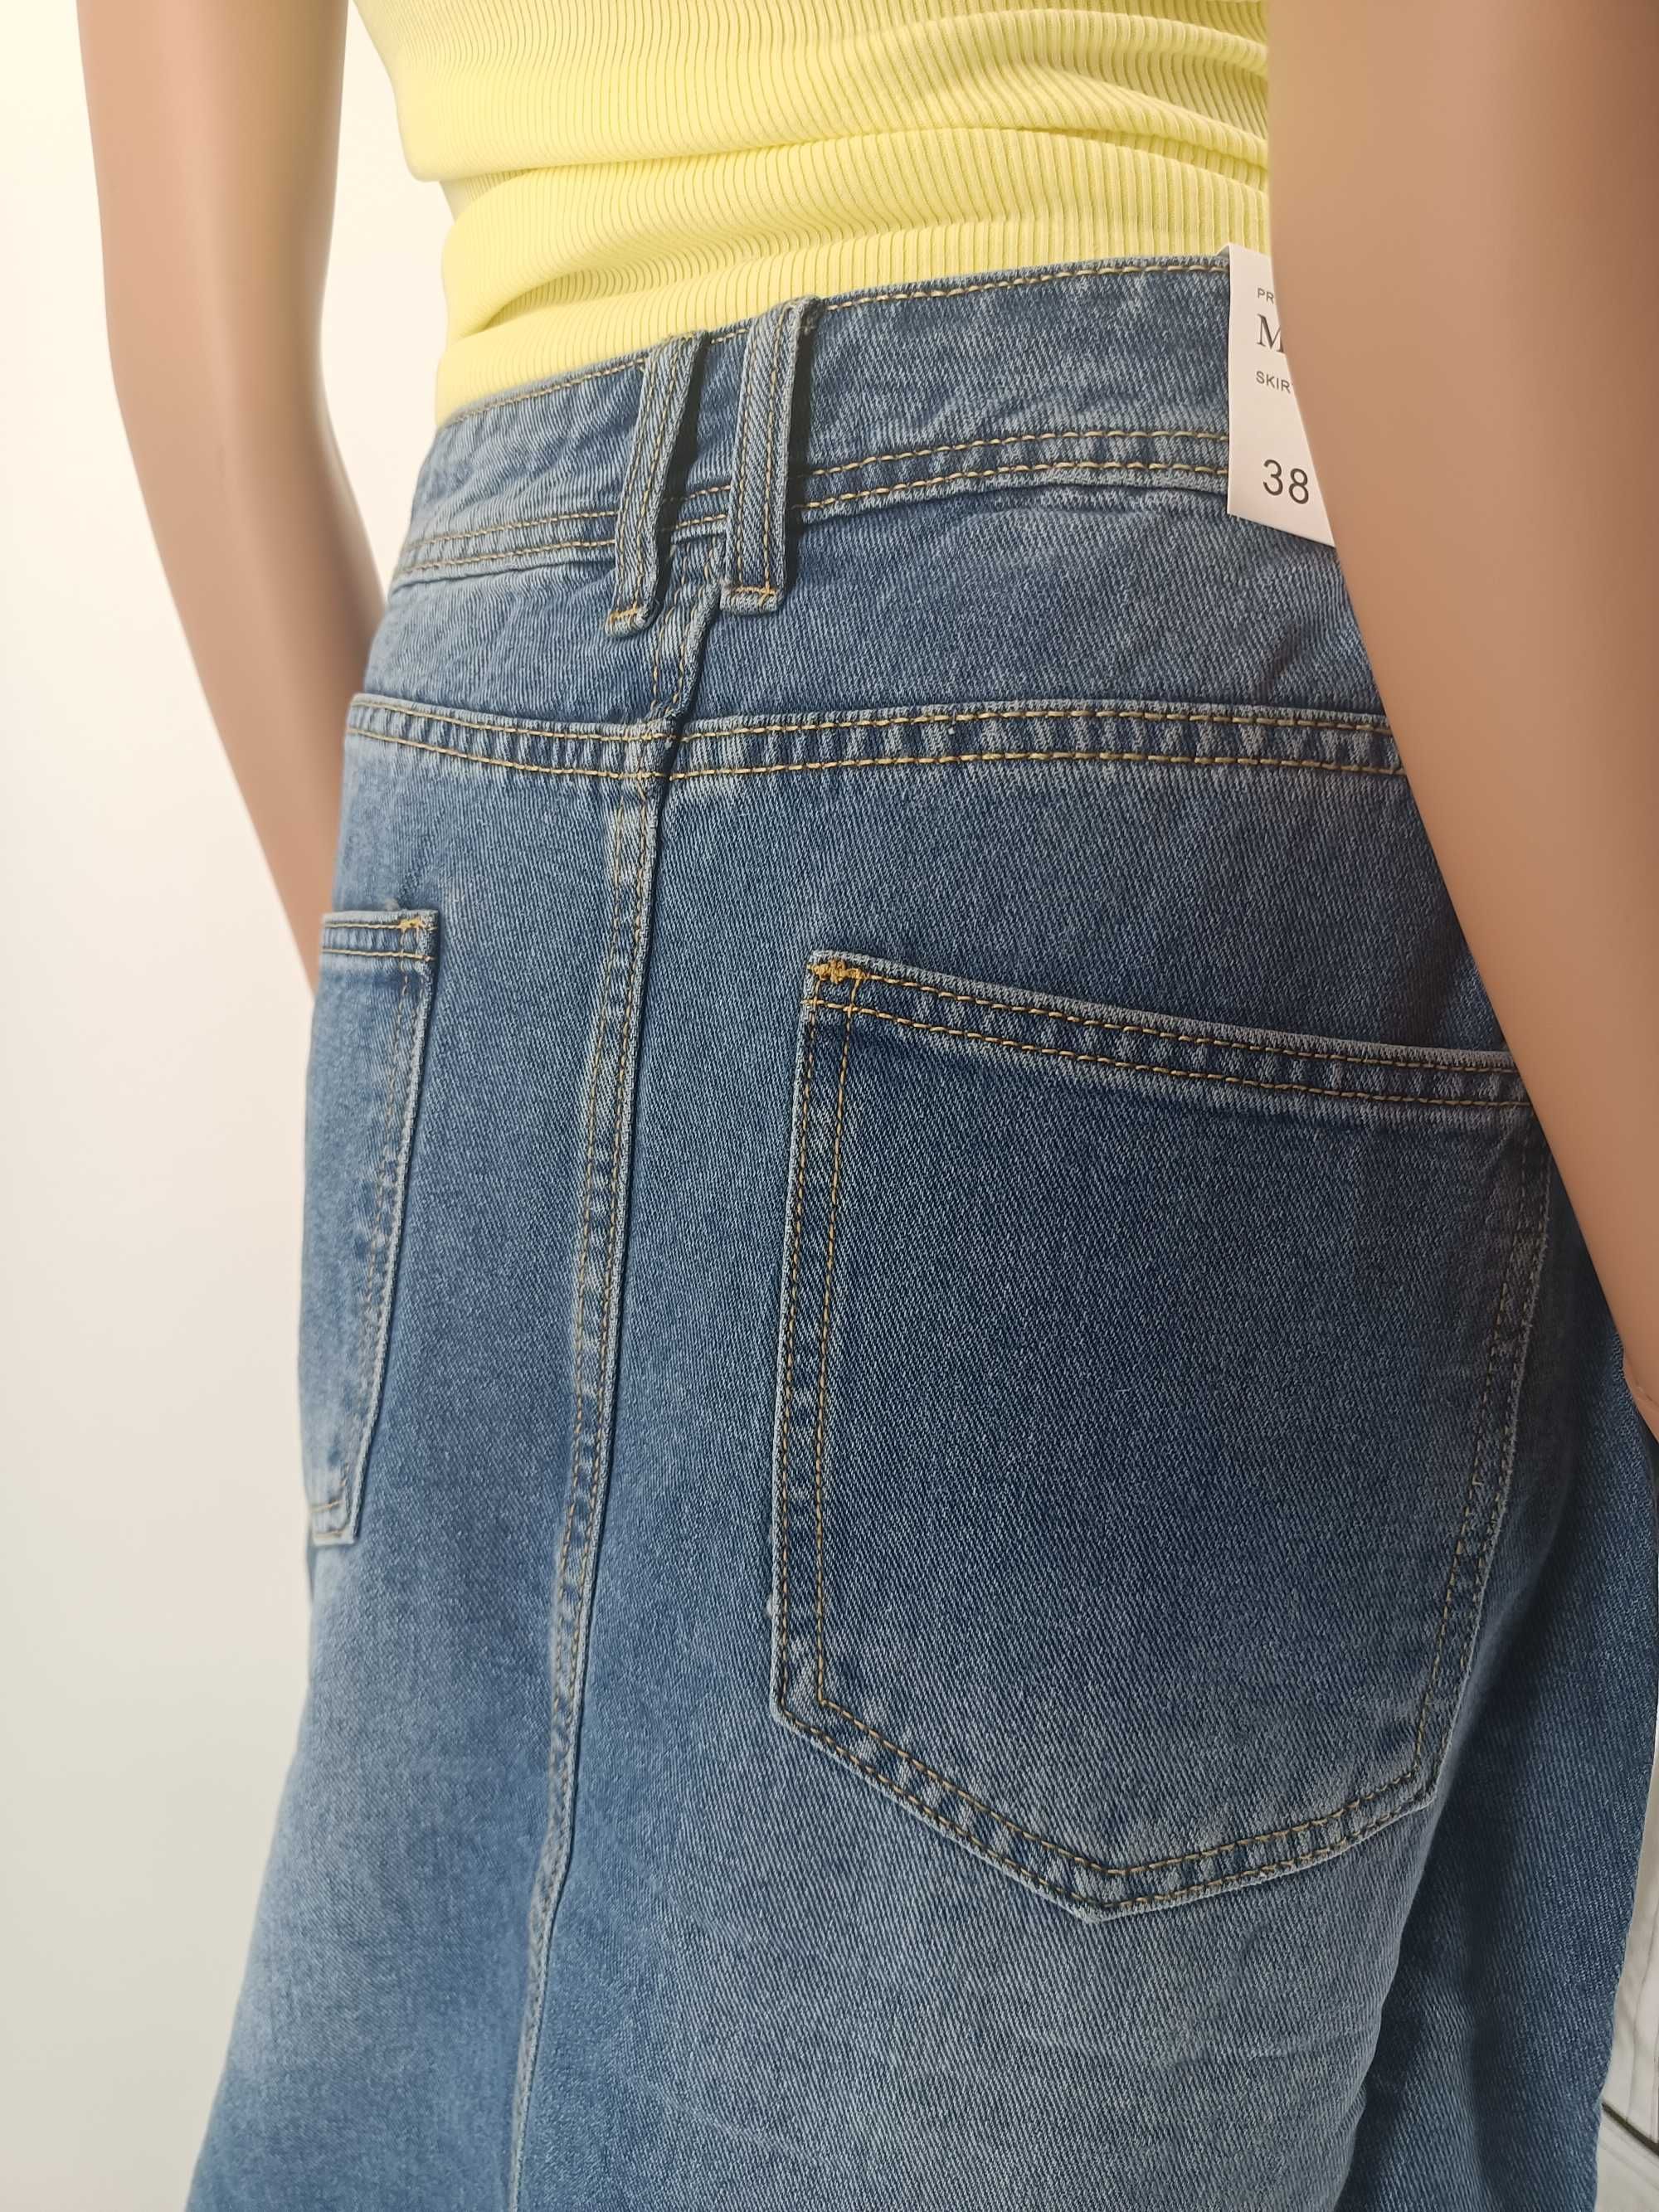 Spódnica jeans niebieska z rozcięciem maxi rozmiar 38 M